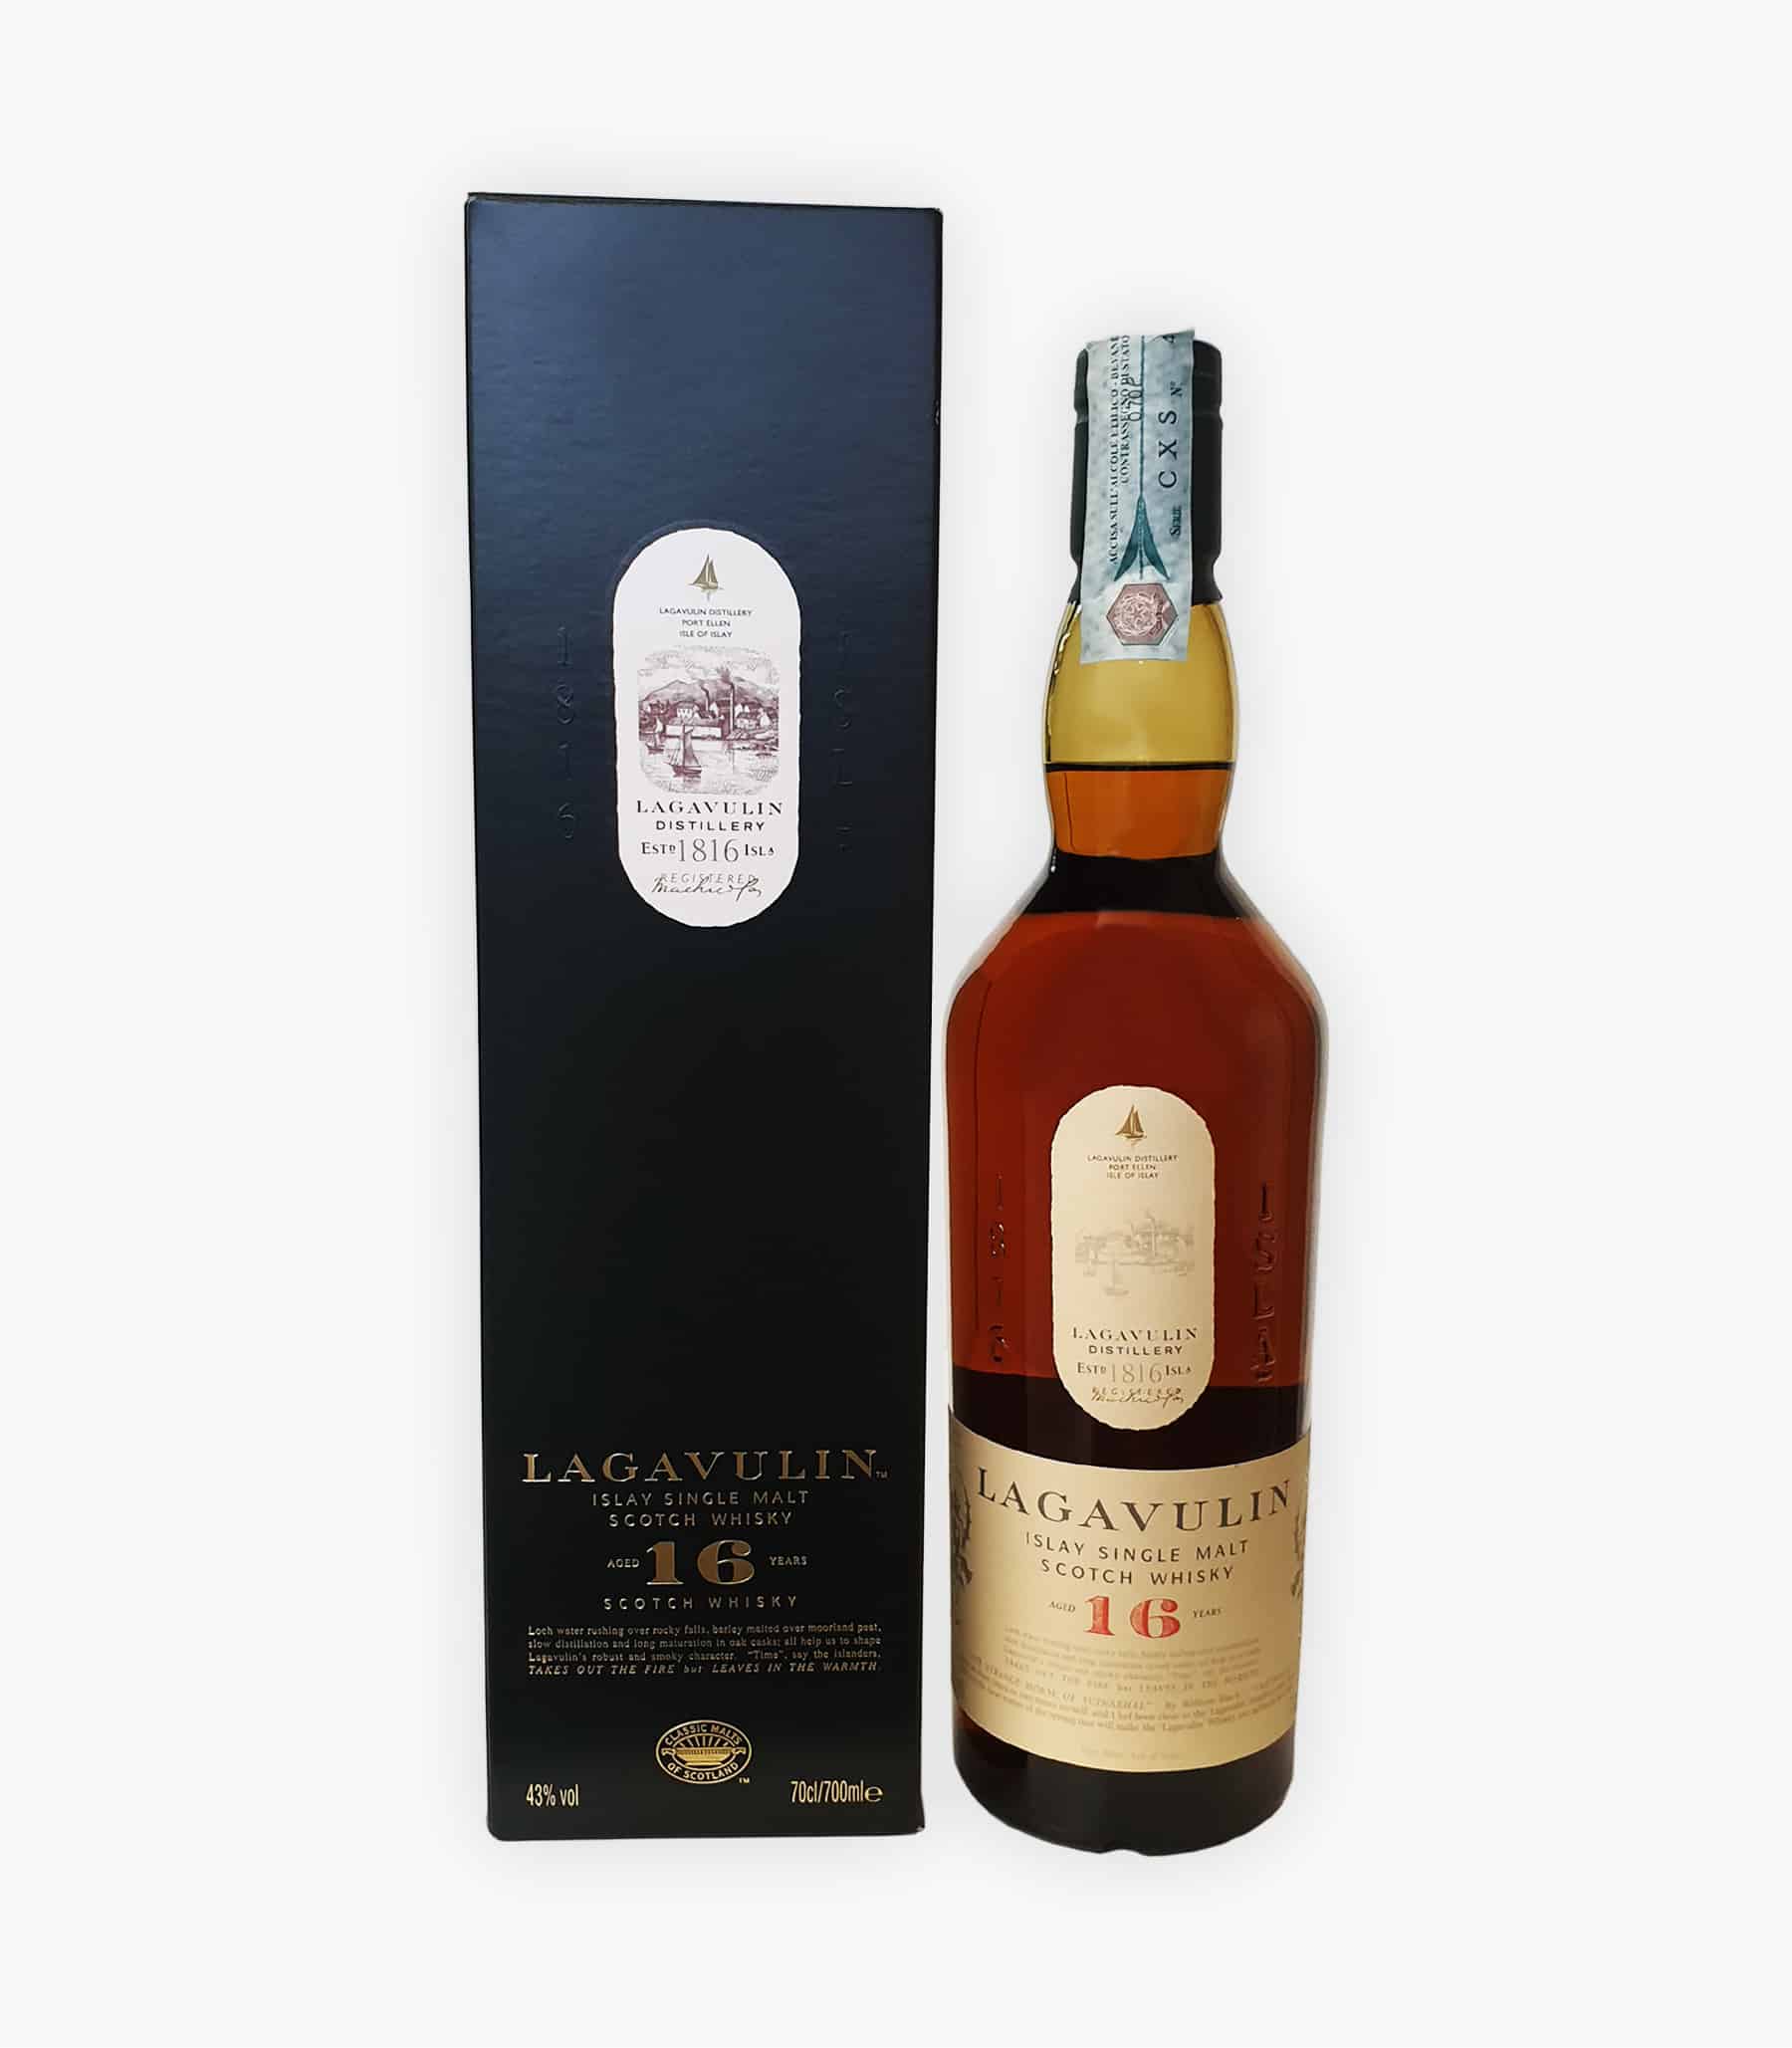 Lagavulin Riserva 16 Anni (Islay): Acquista Whisky Online, Prezzi e Offerte